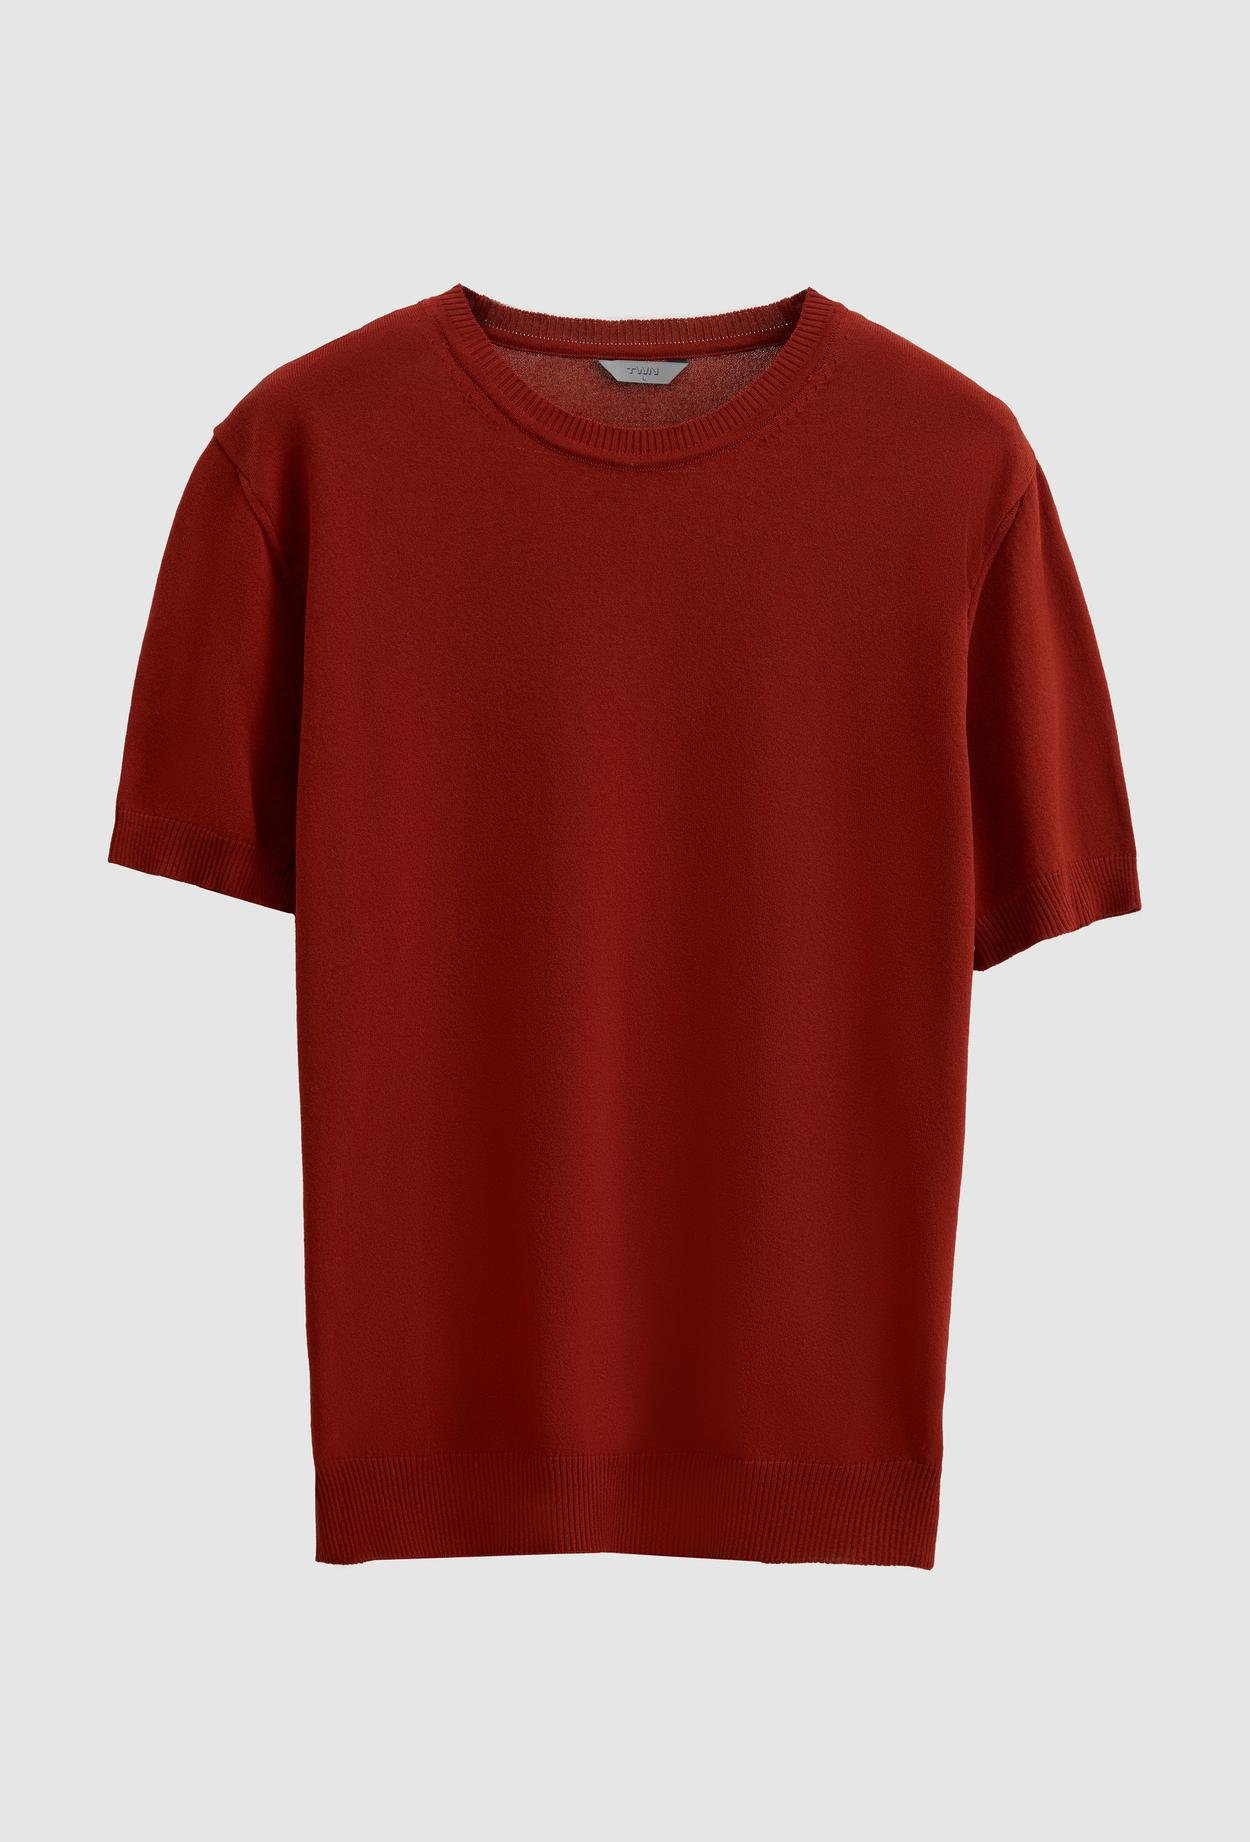 Twn Slim Fit Kiremit Düz Örgü Rayon Örme T-Shirt